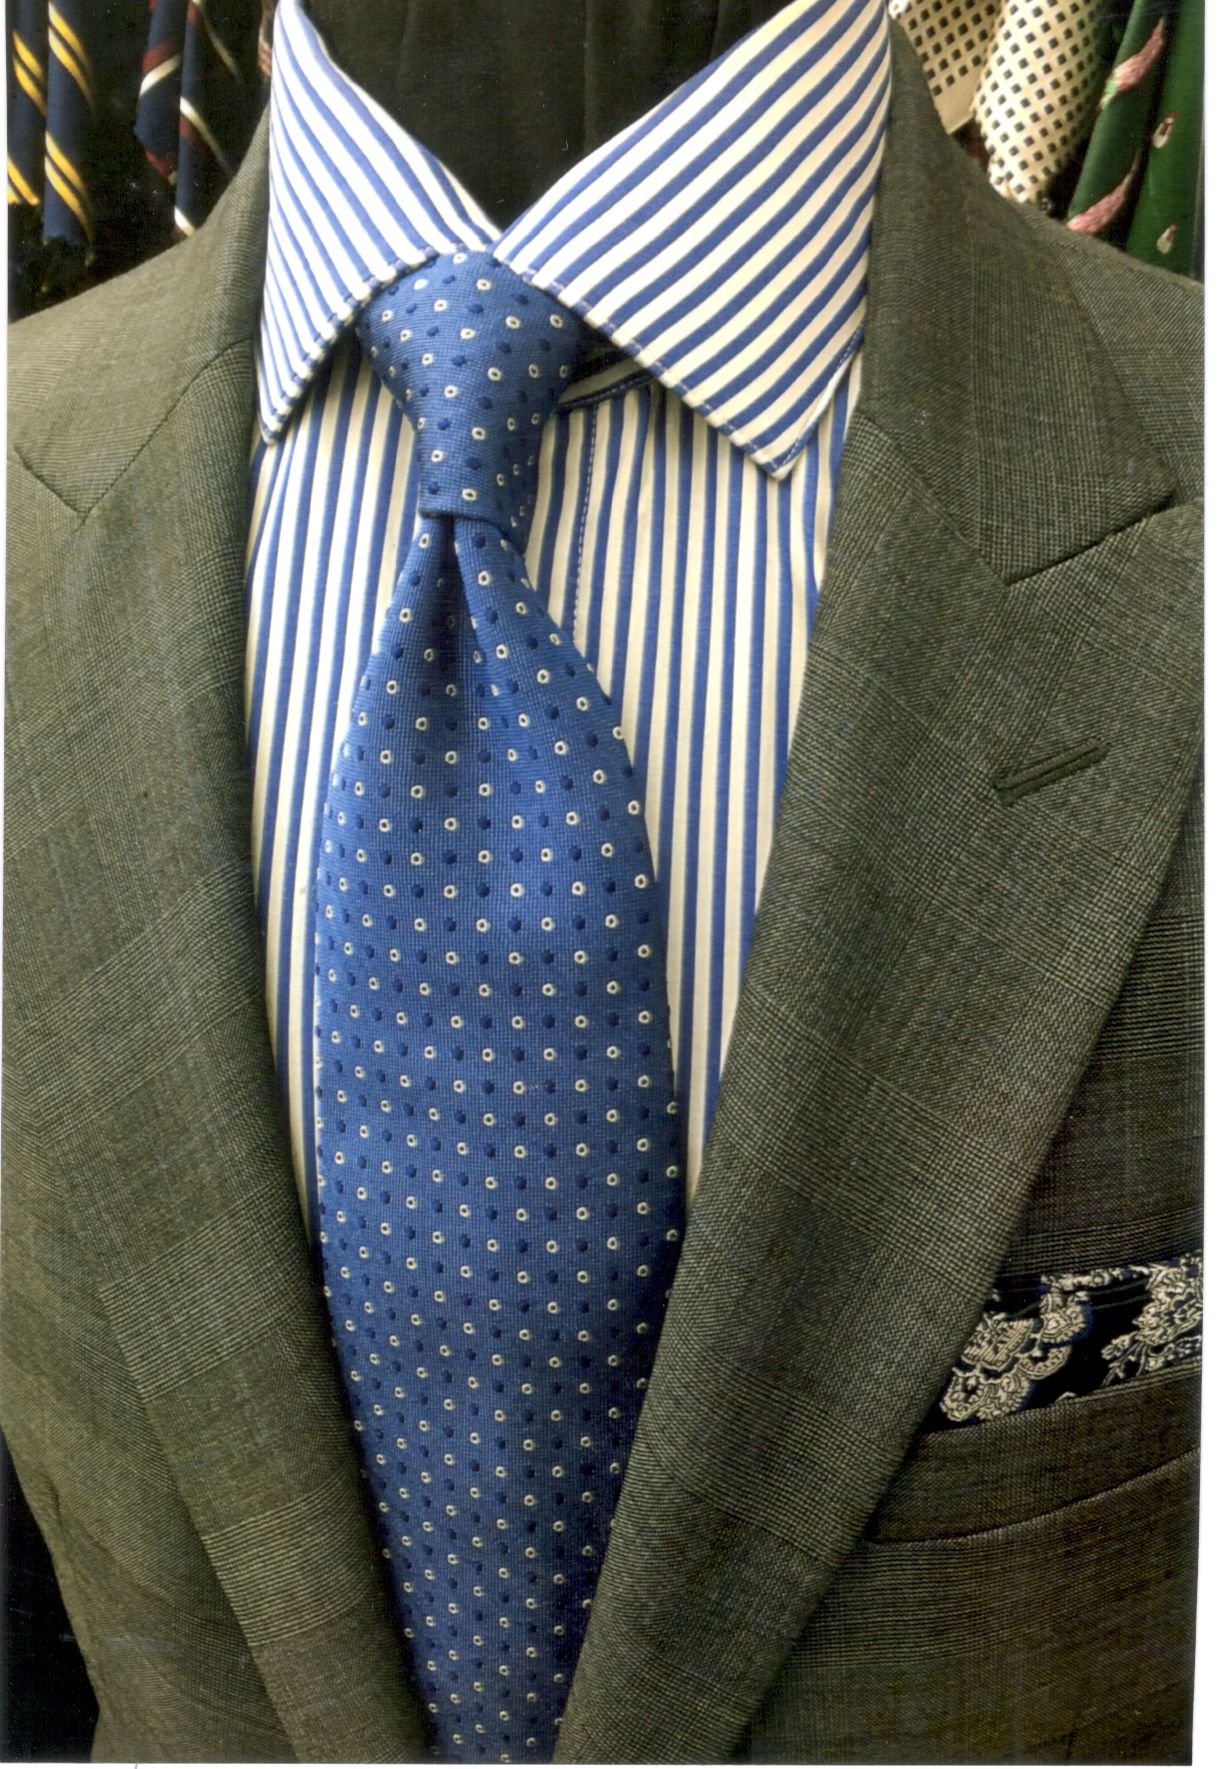 Neckties 2.jpeg